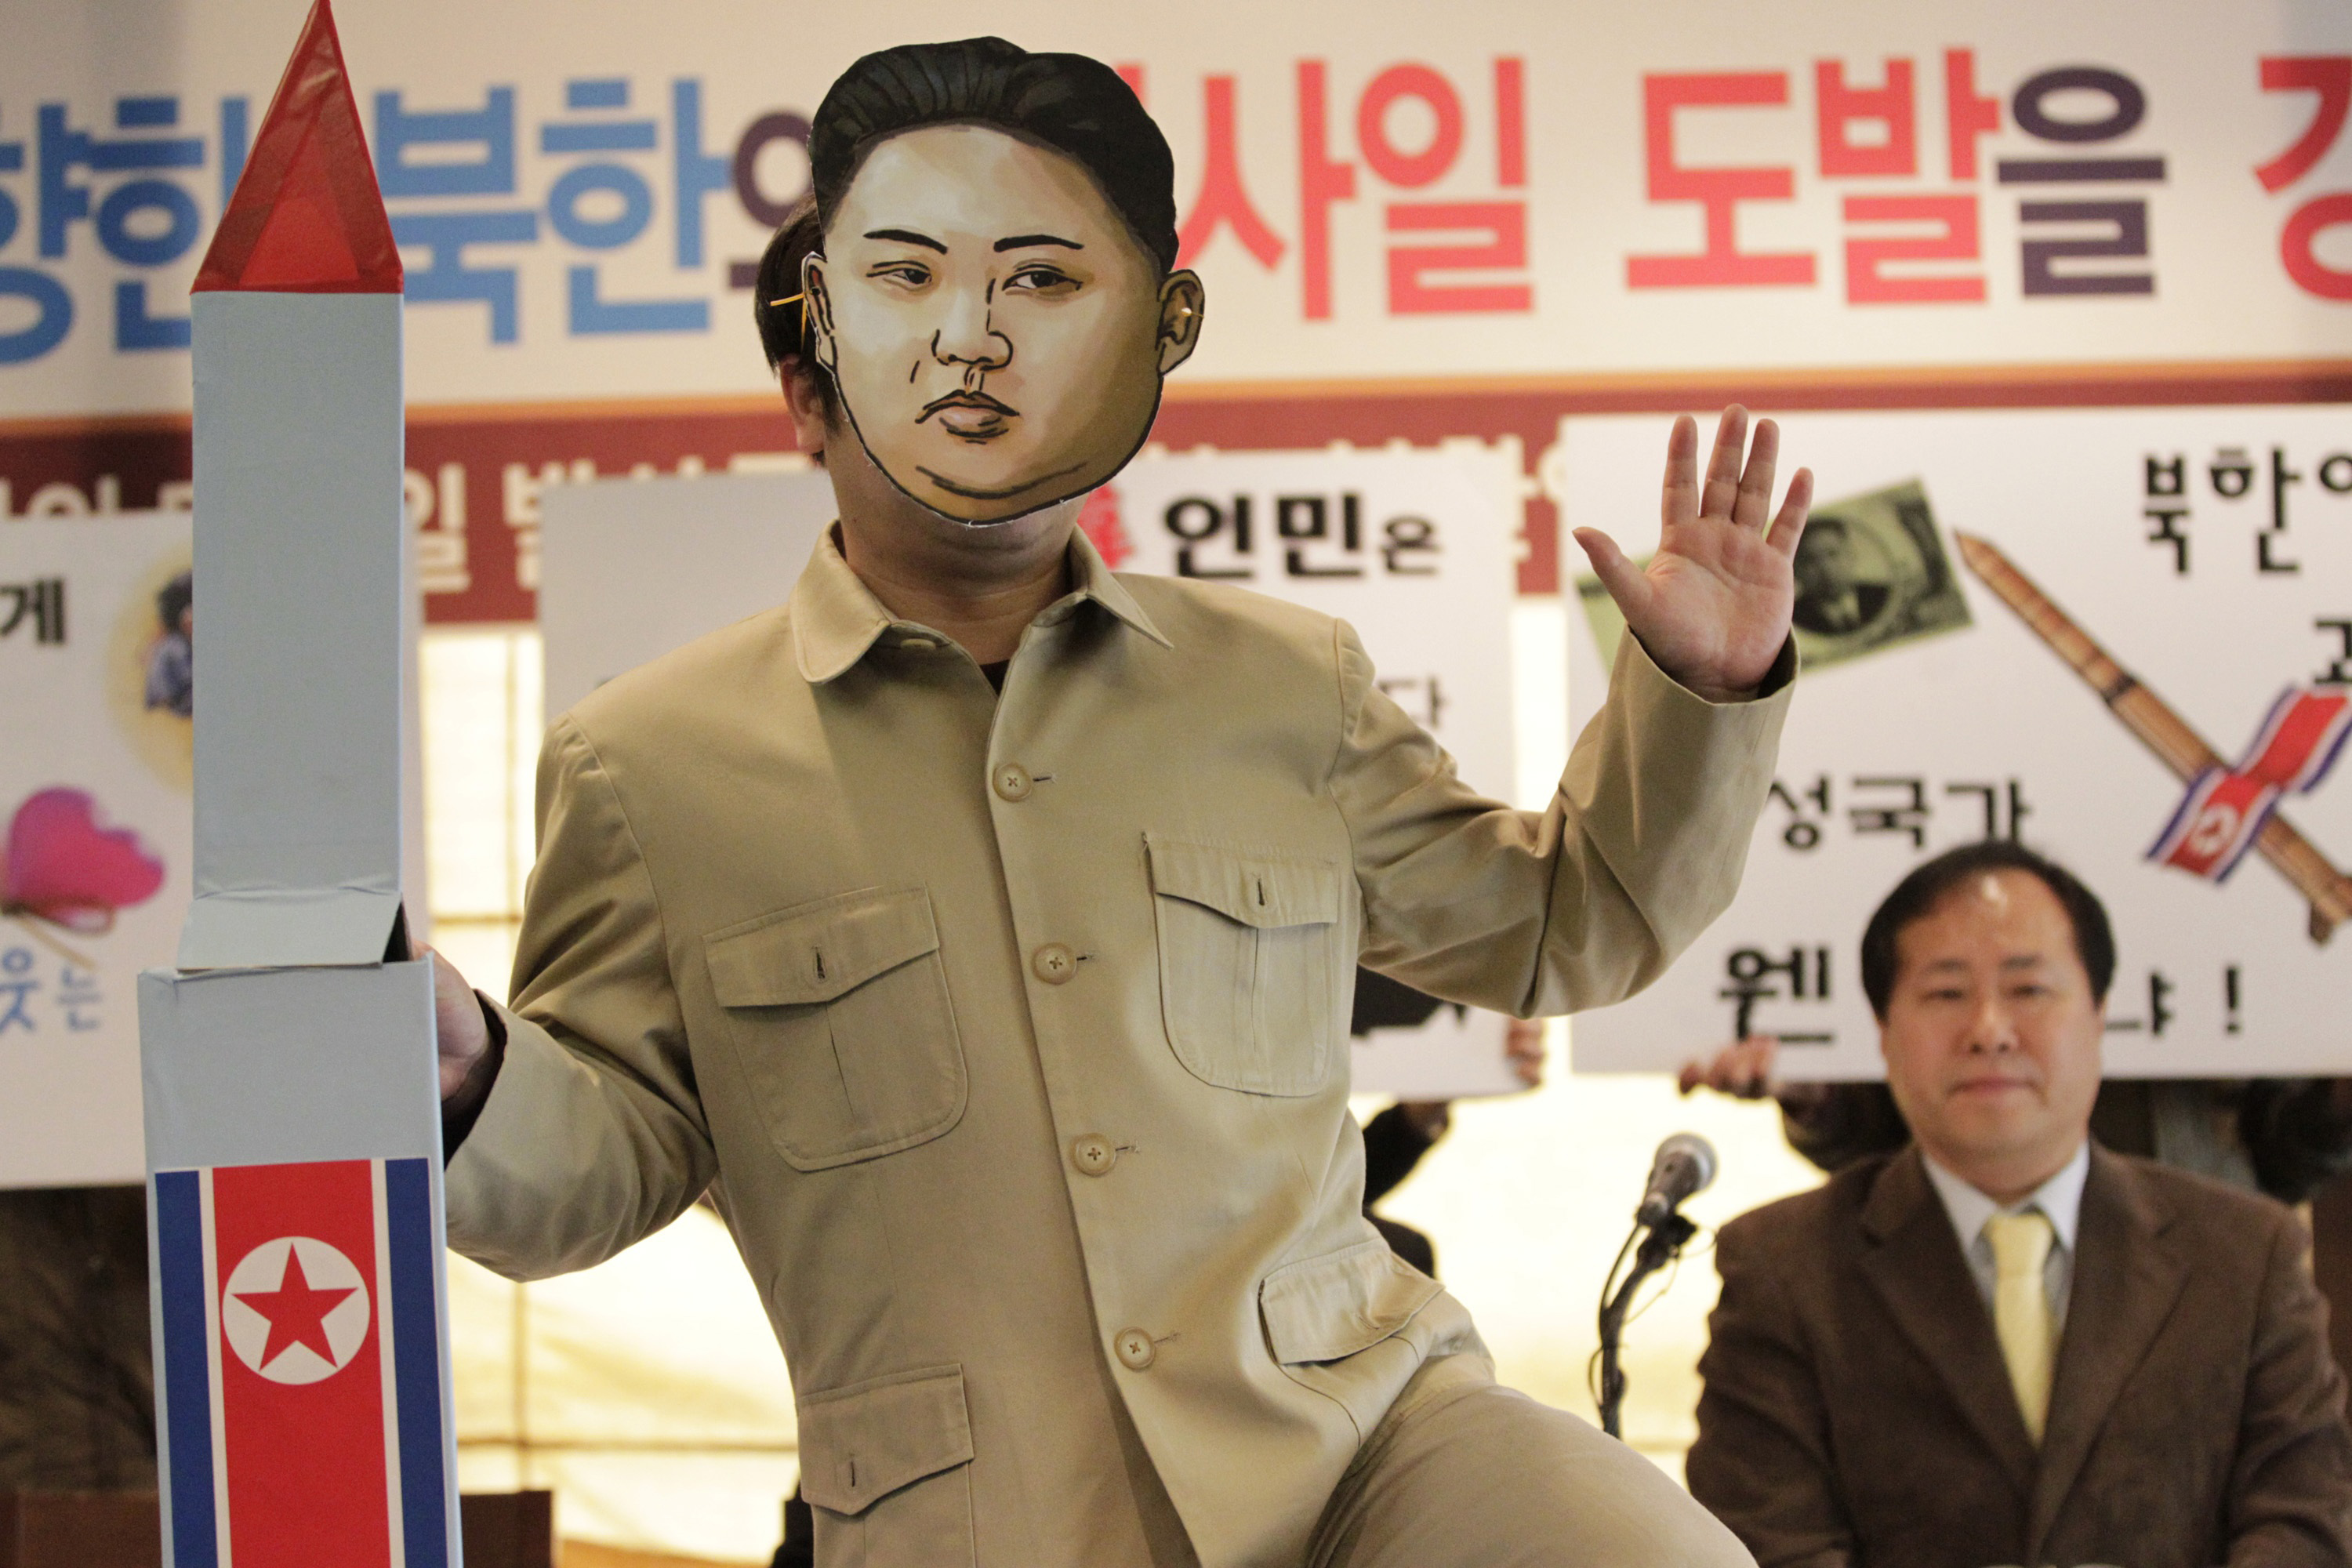 I Sydkorea har man protesterat mot Nordkoreas tester - ibland på mer roliga sätt än andra.